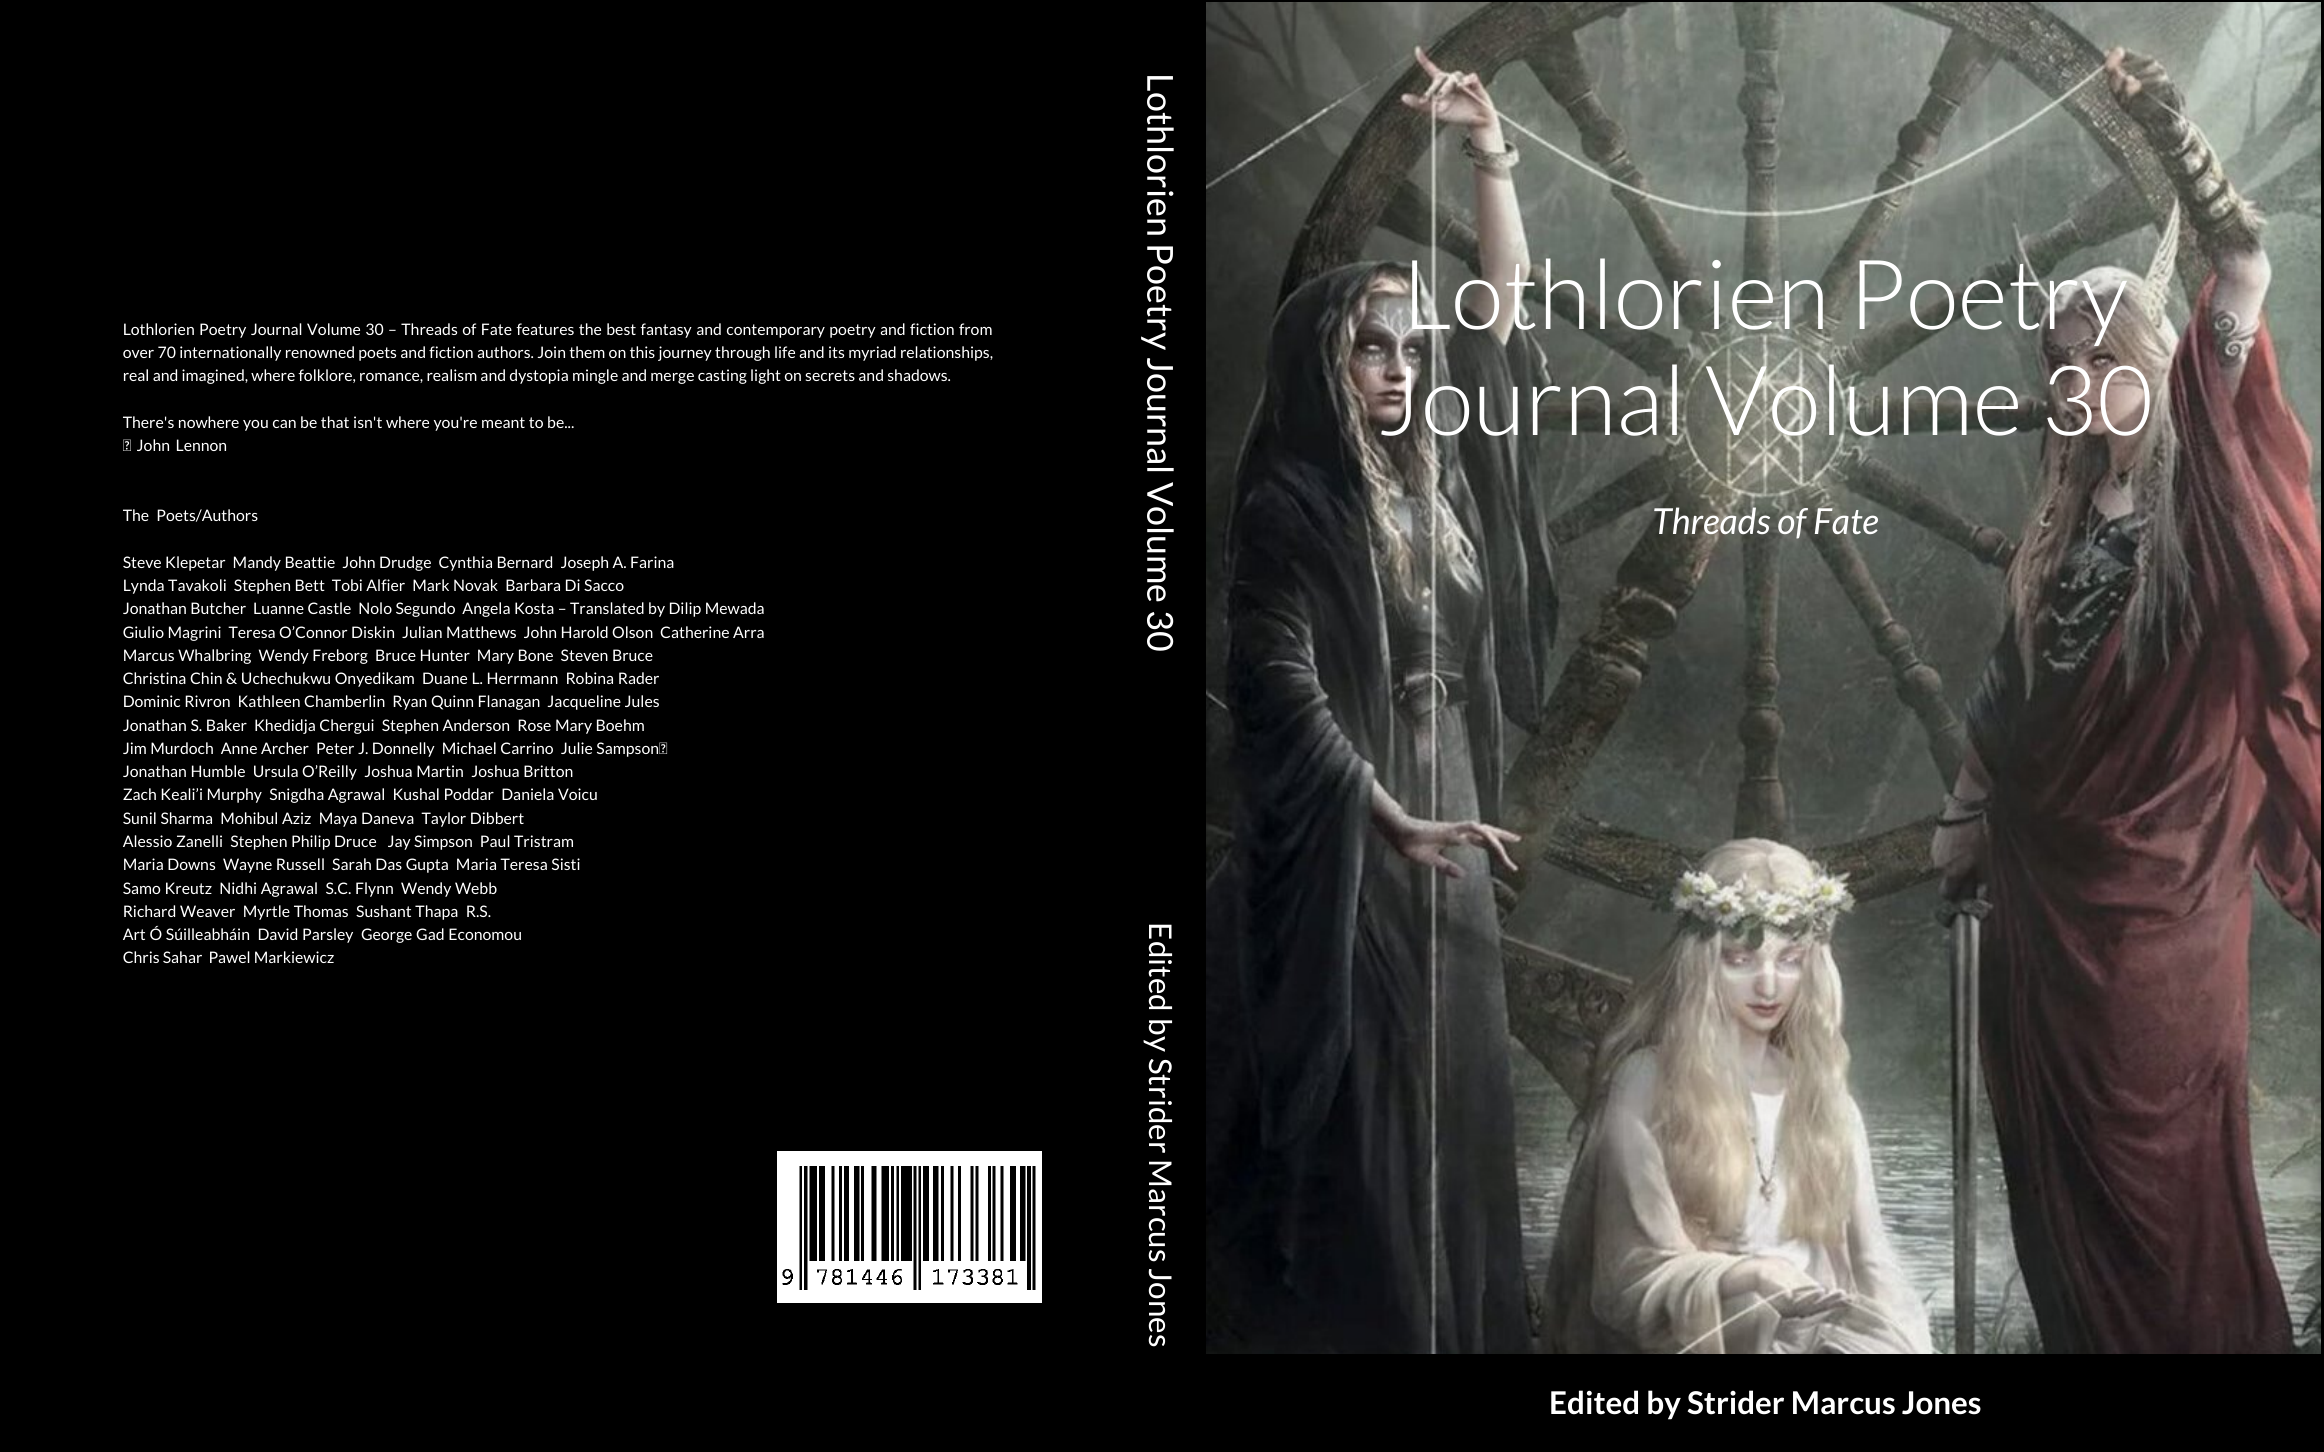 Lothlorien Poetry Journal: Buy Lothlorien Poetry Journal Volumes 1-30